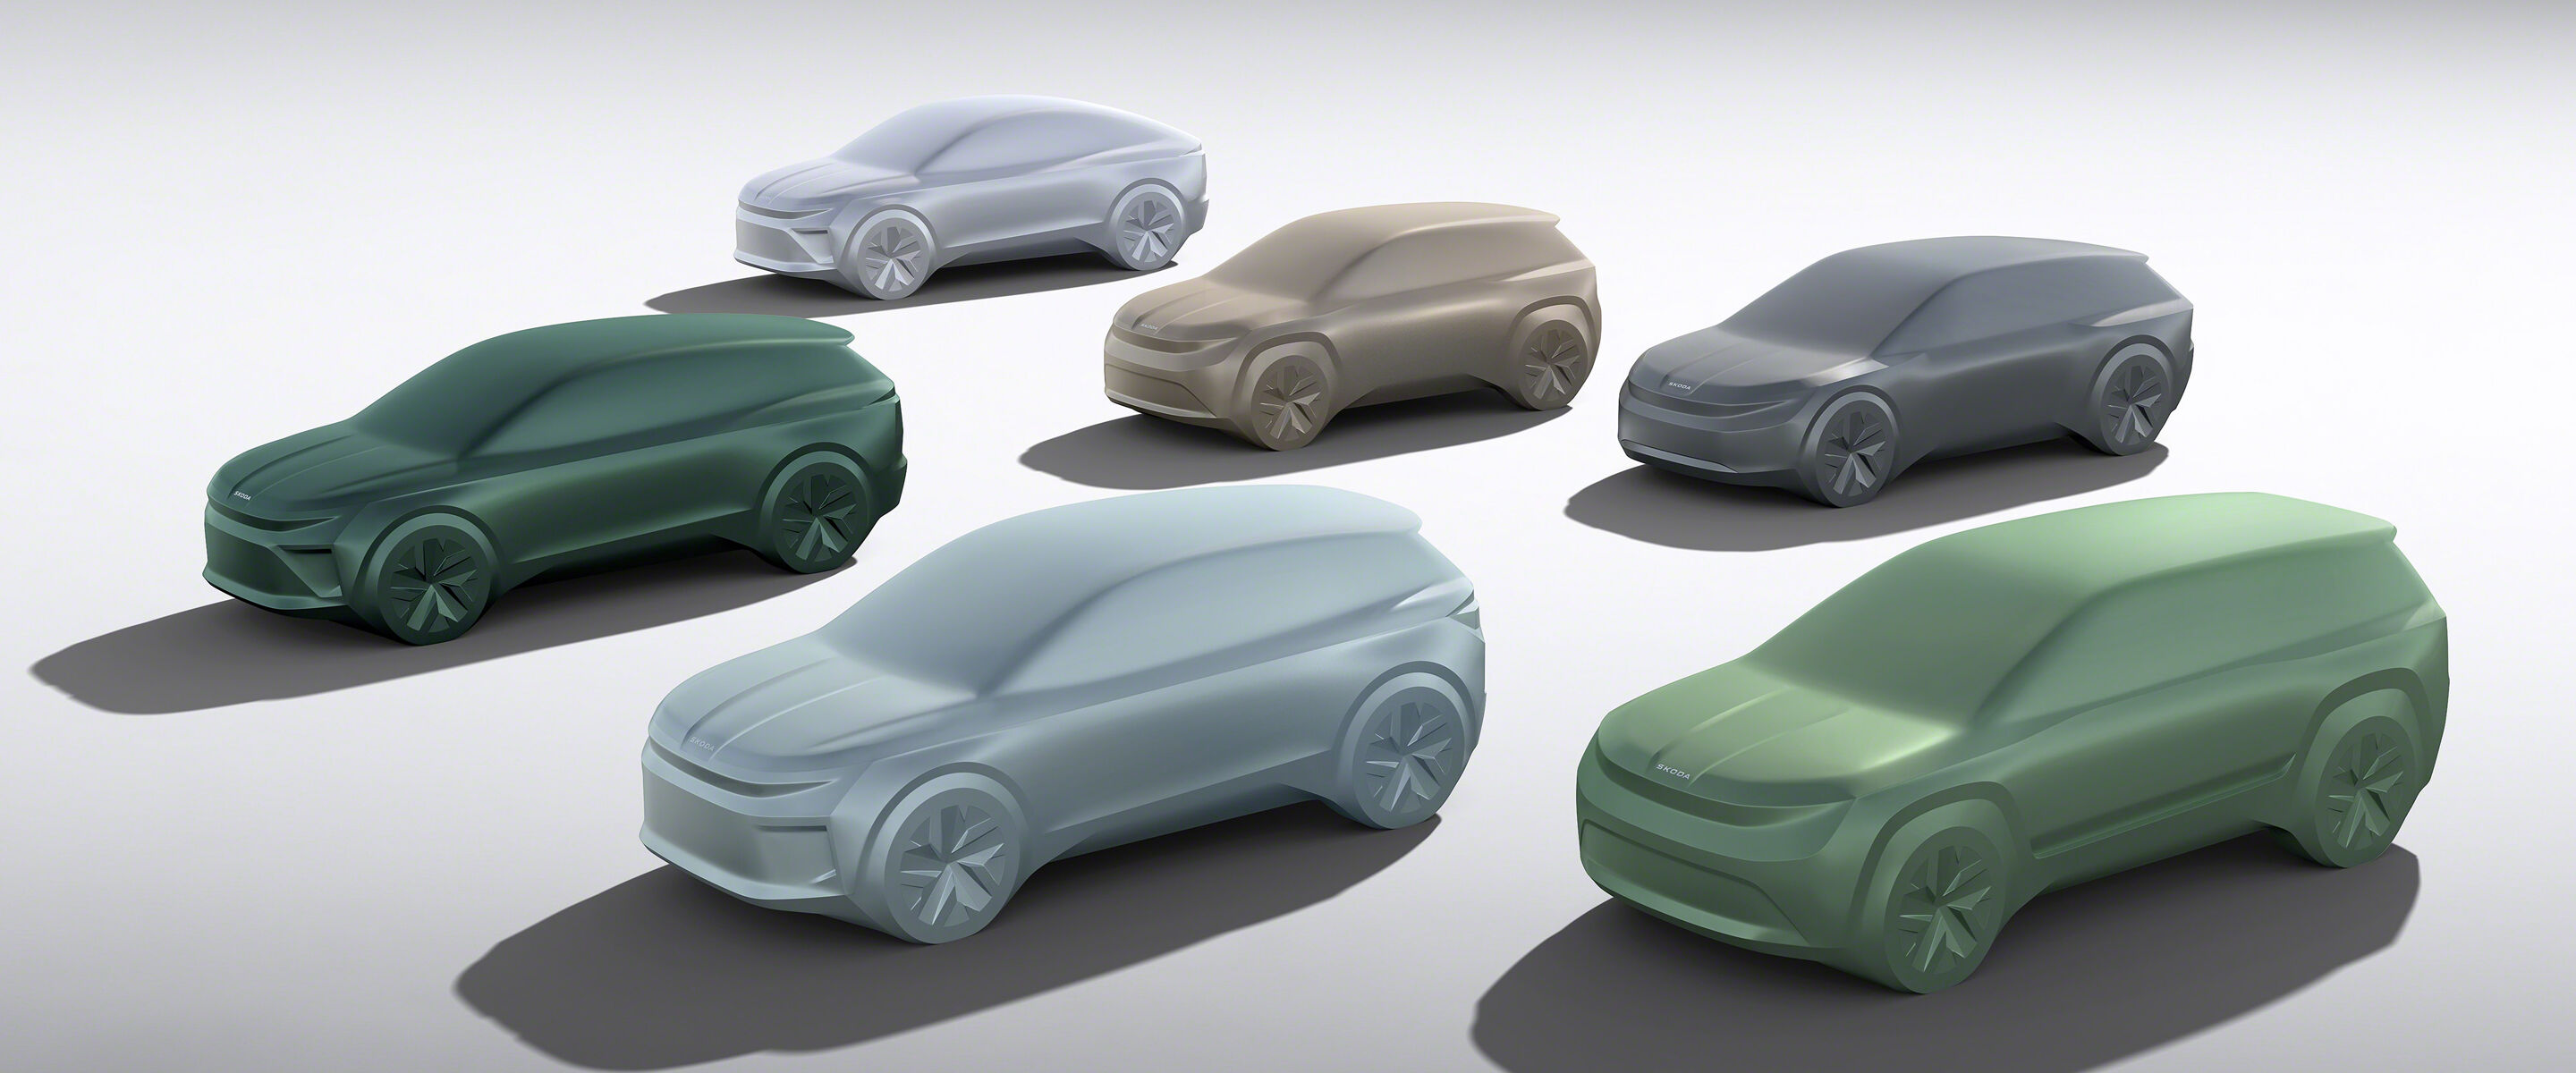 Škoda plant vier nieuwe elektrische modellen